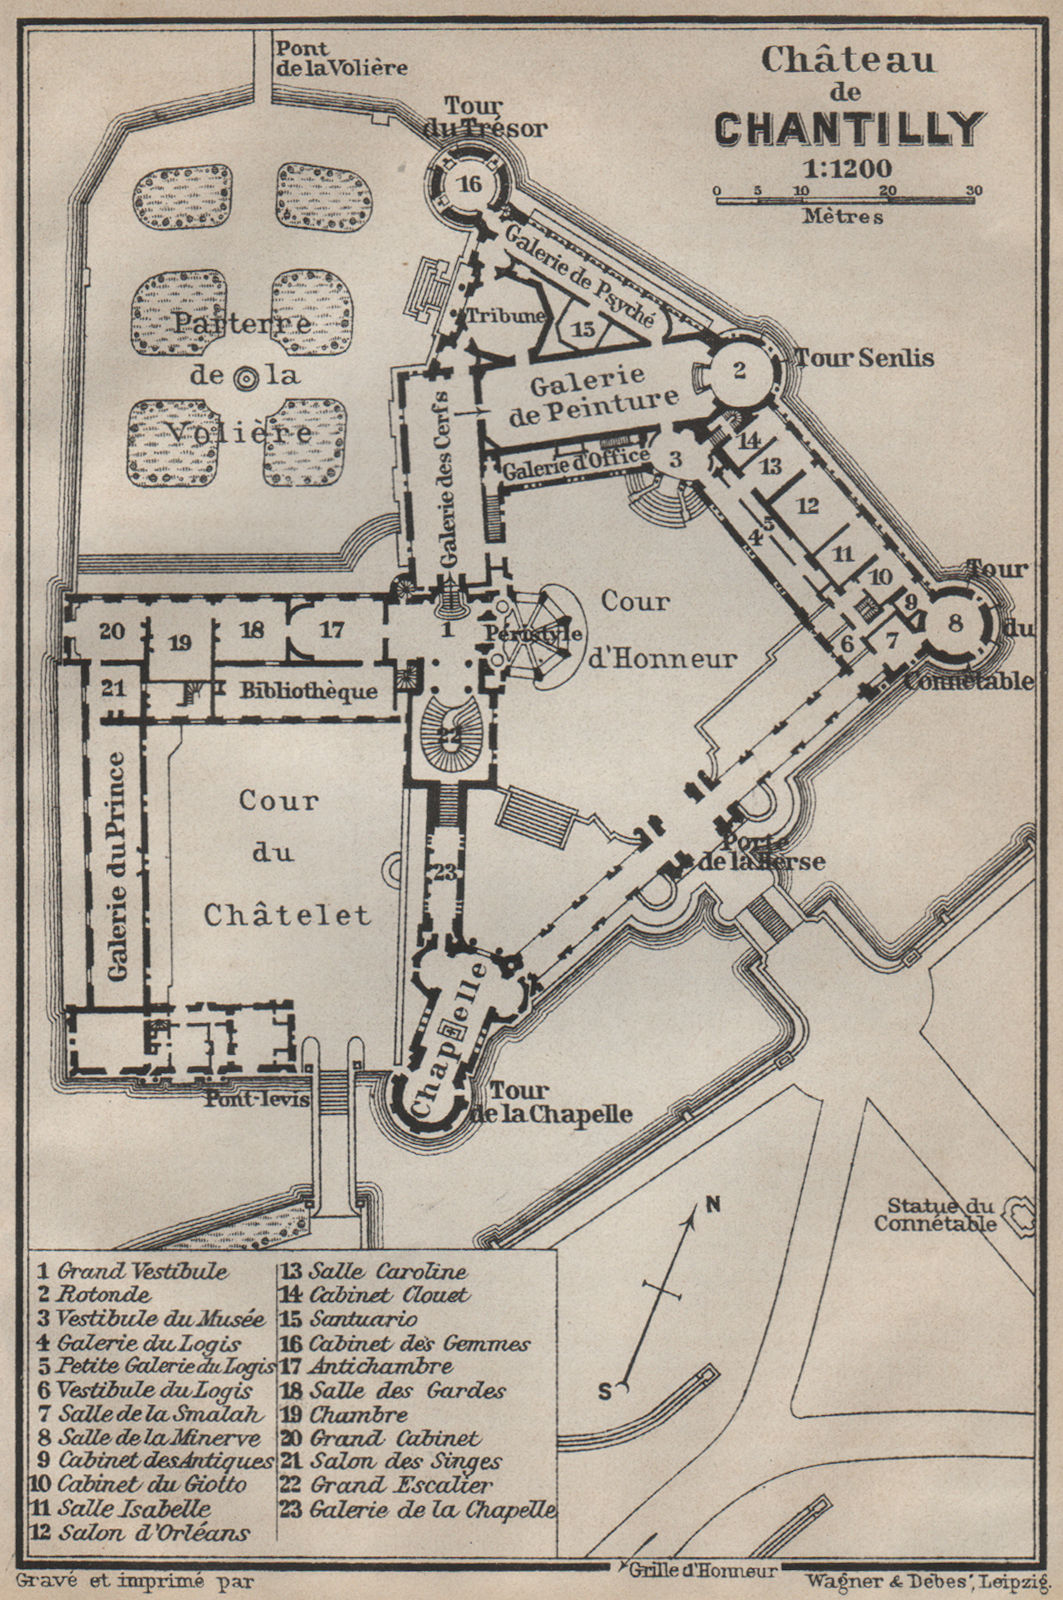 Associate Product CHÂTEAU DE CHANTILLY floor plan. Oise carte. BAEDEKER 1907 old antique map